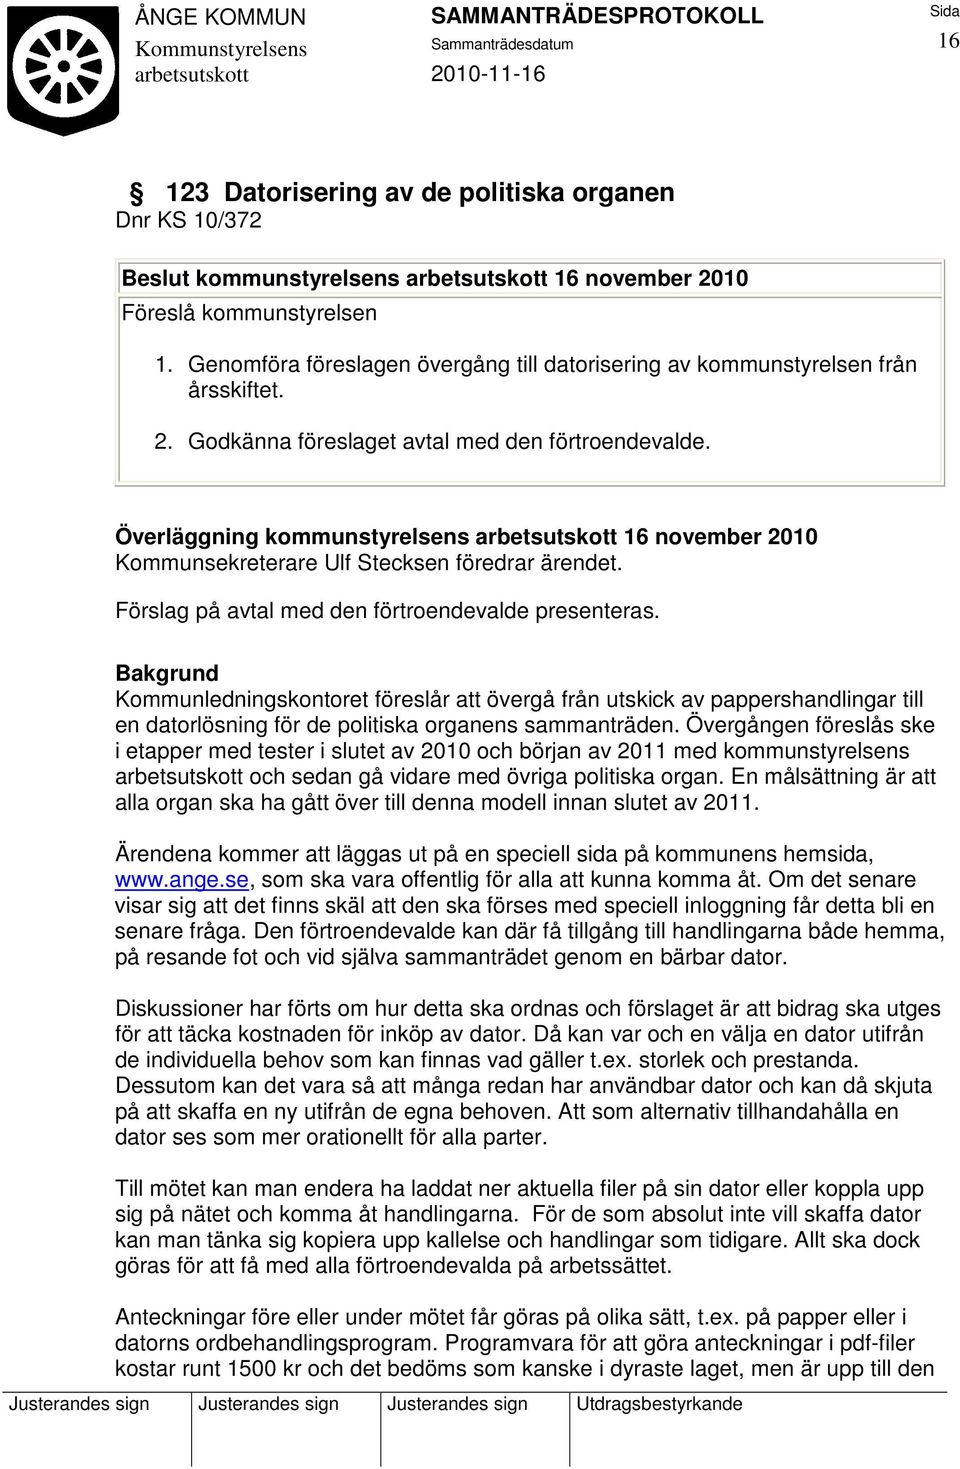 Överläggning kommunstyrelsens 16 november 2010 Kommunsekreterare Ulf Stecksen föredrar ärendet. Förslag på avtal med den förtroendevalde presenteras.